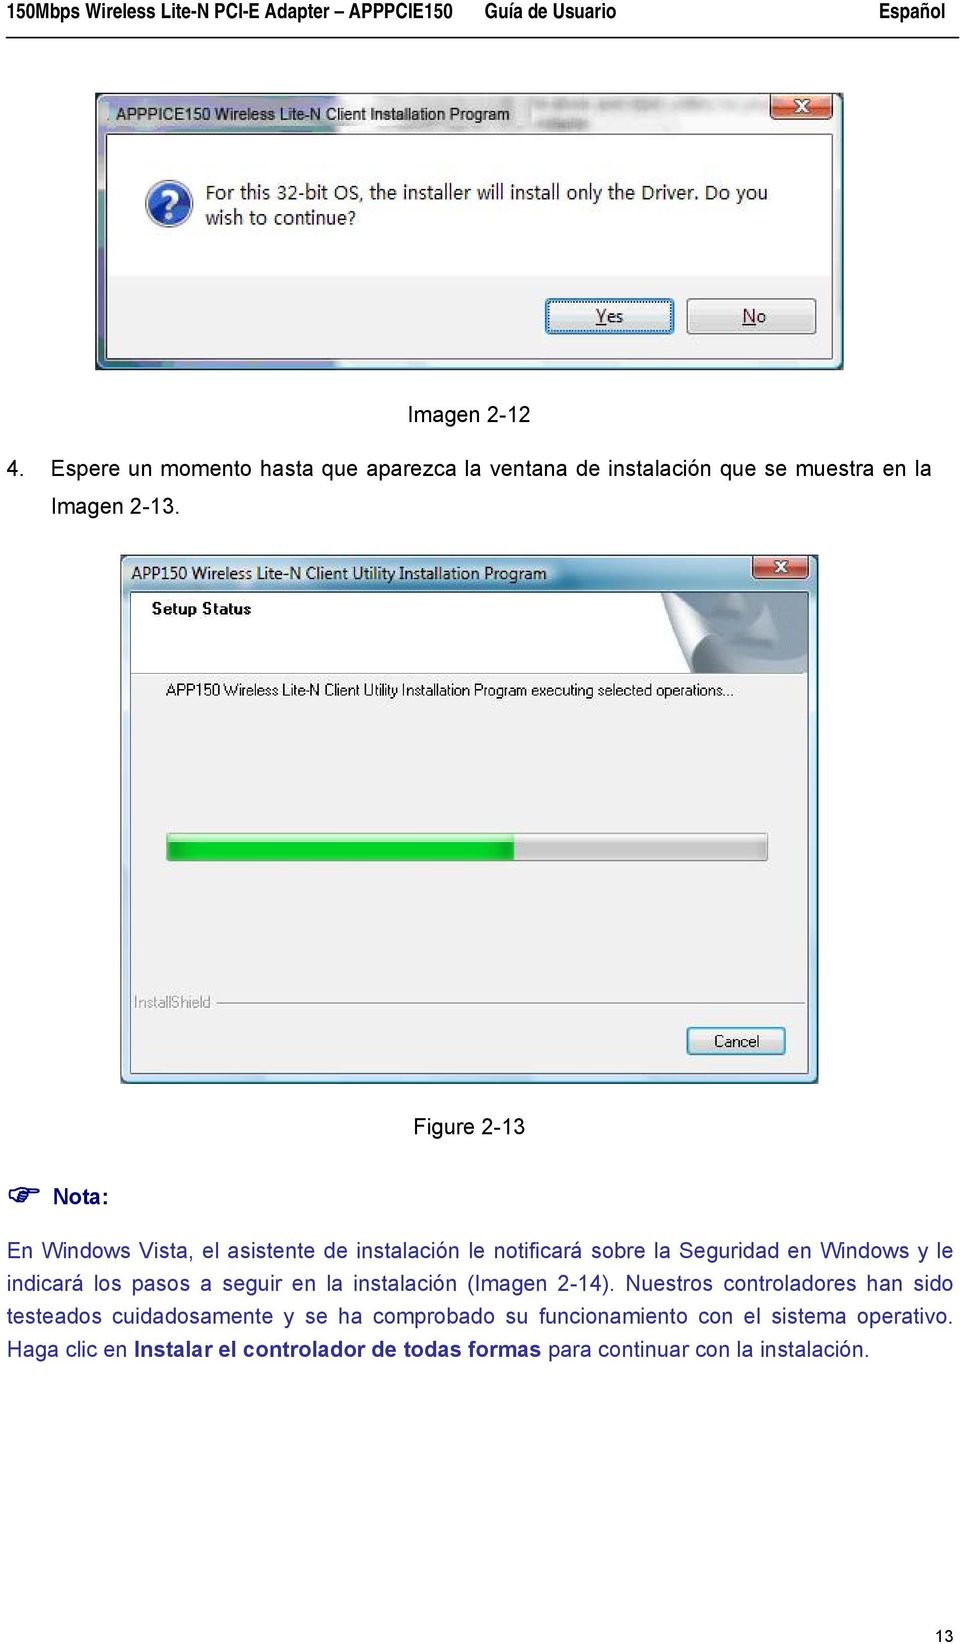 Figure 2-13 Nota: En Windows Vista, el asistente de instalación le notificará sobre la Seguridad en Windows y le indicará los pasos a seguir